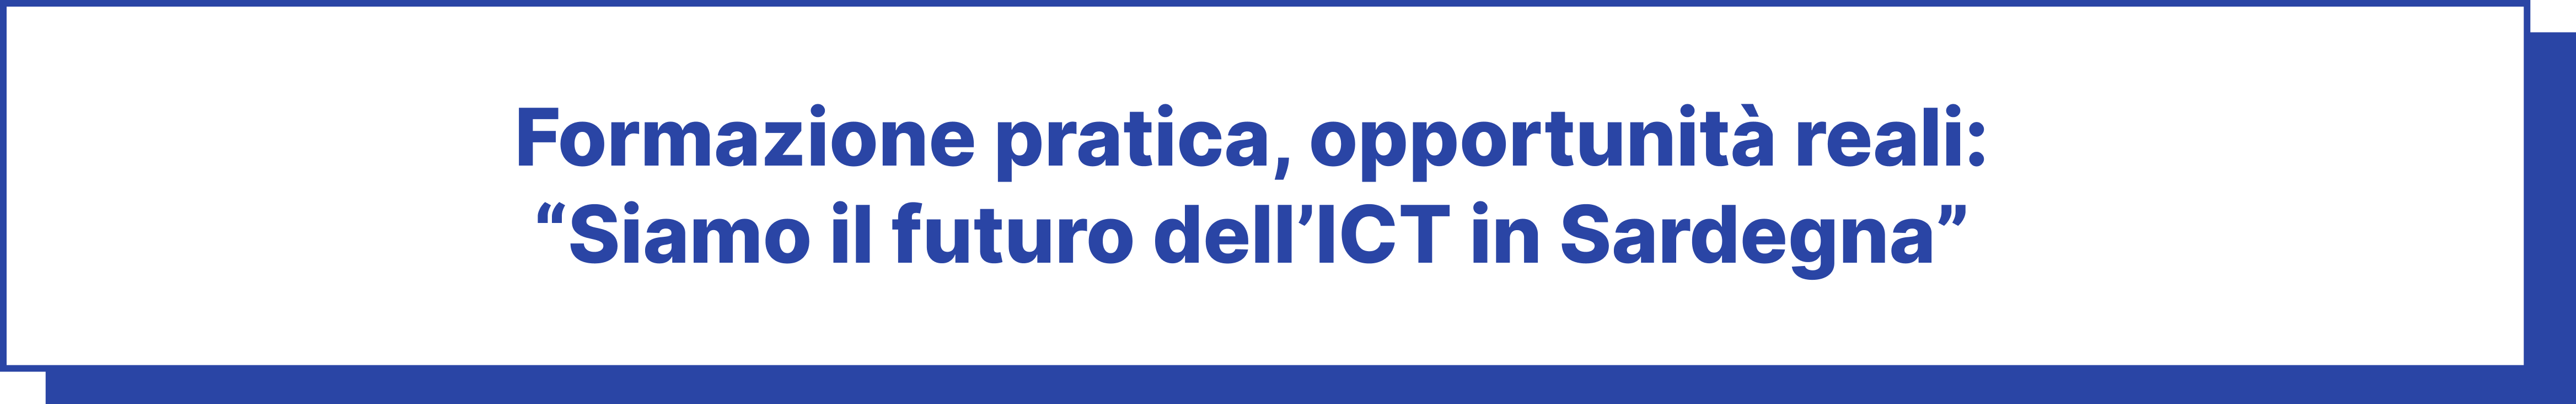 Formazione pratica, opportunità reali: Siamo il futuro dell'ICT in Sardegna